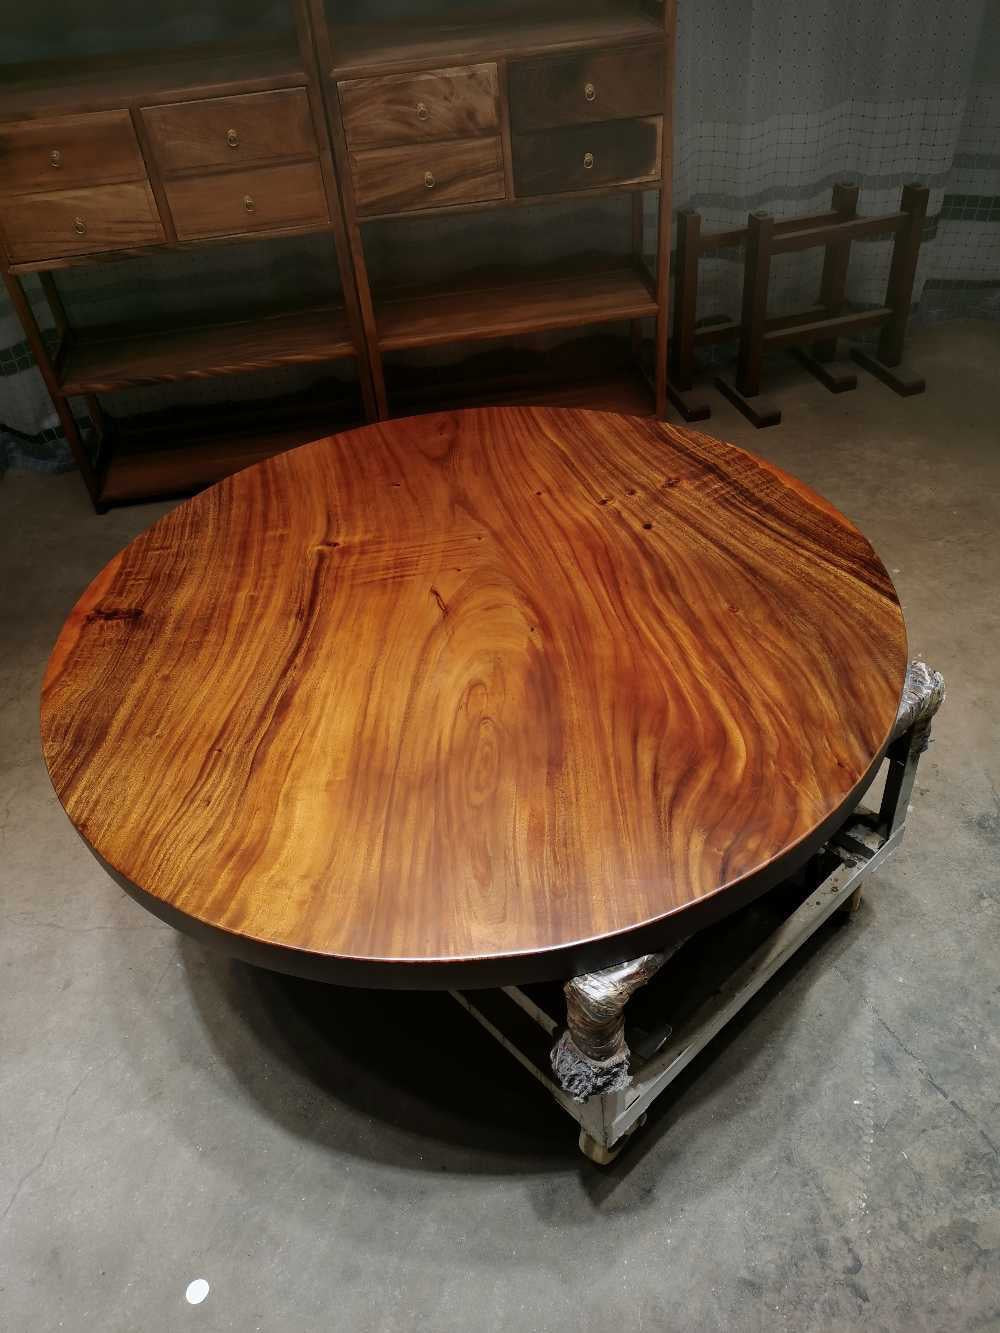 طاولة مستديرة من الخشب قطعة واحدة، طاولة مستديرة من الخشب 60، طاولة مستديرة من الخشب الحقيقي، طاولة مستديرة من الخشب الطبيعي